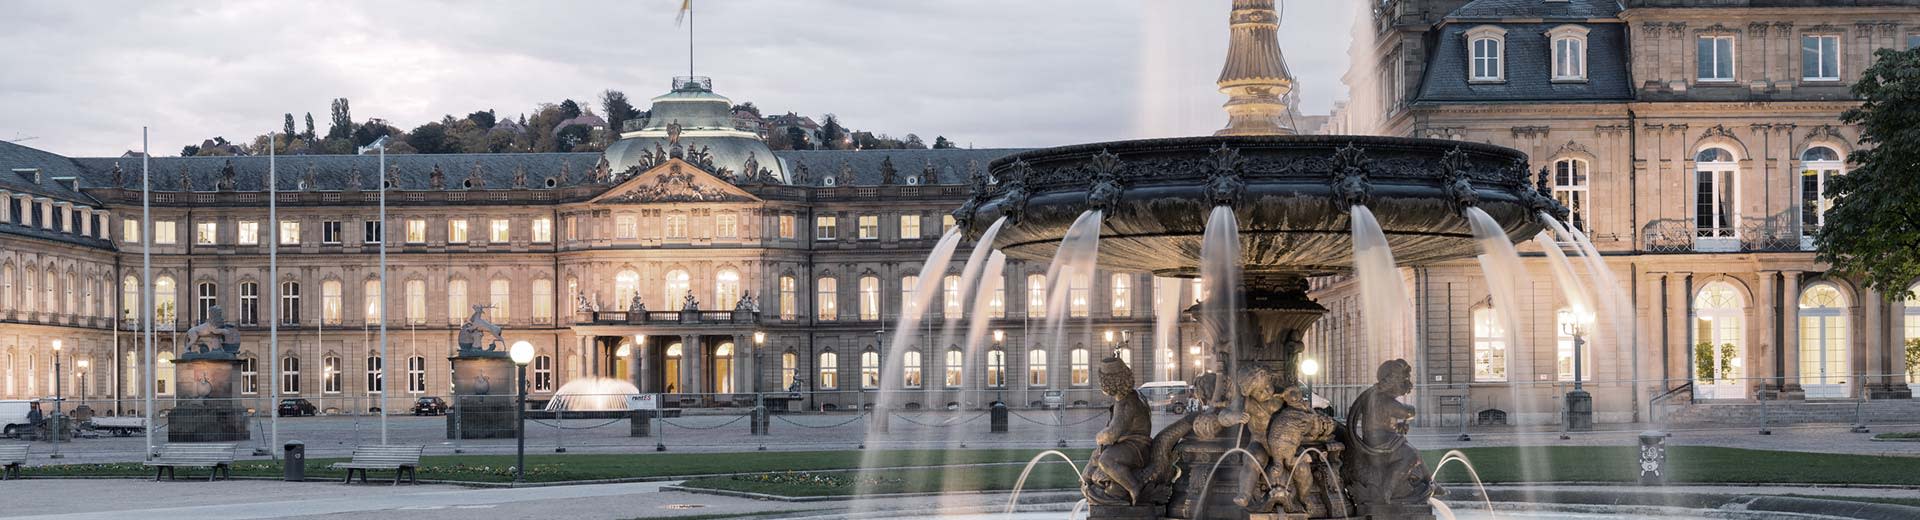 Ein wunderschöner Brunnen dominiert den Vordergrund, während hinter einem historischen Gebäude im Halblicht eines Stuttgart-Abends steht.